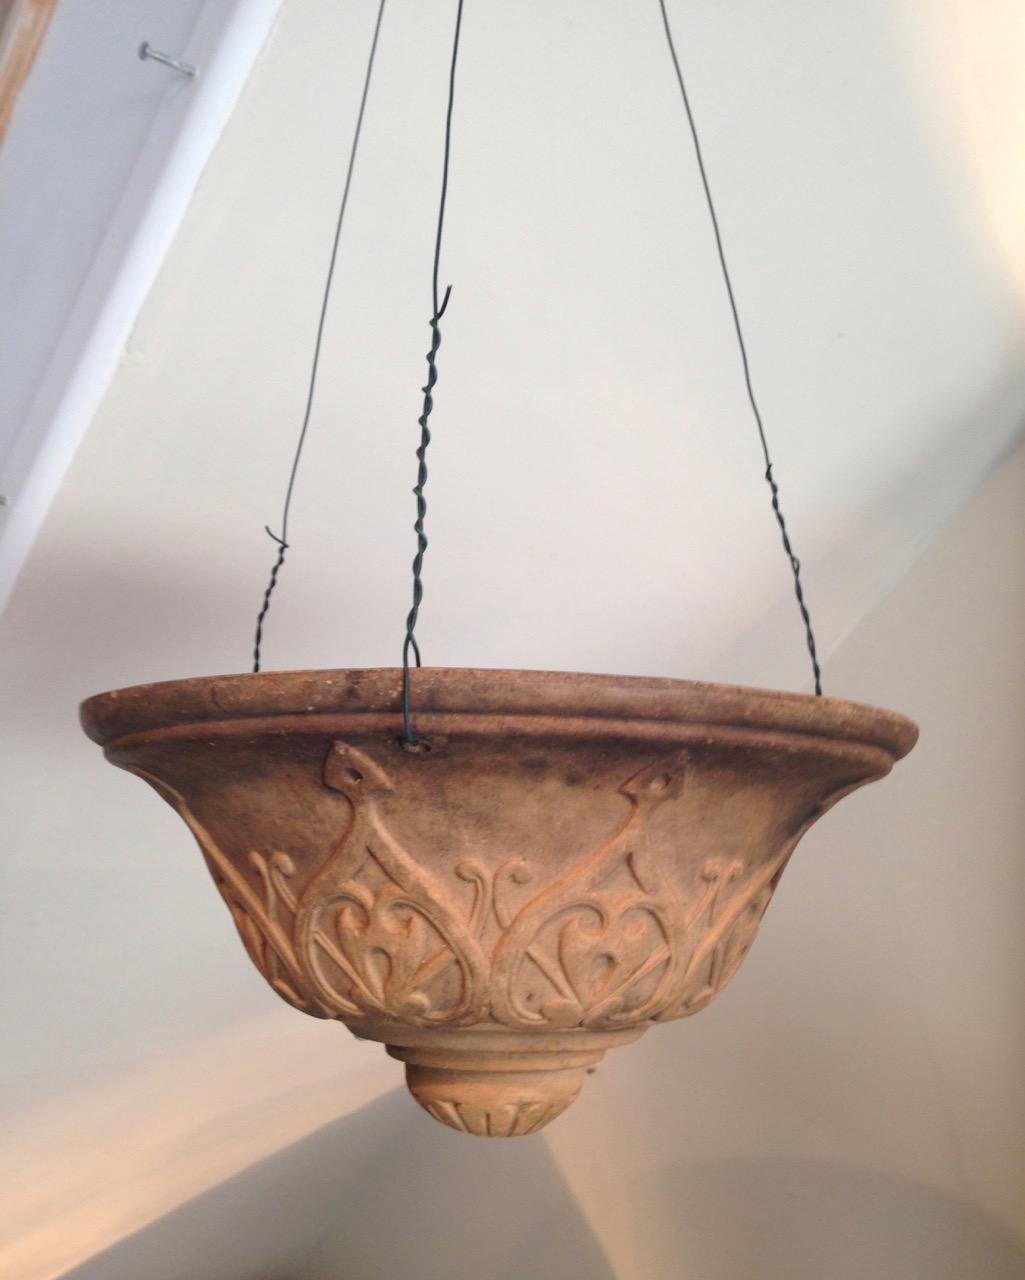  Terracotta  Hanging  Pot  Accessories Lighting